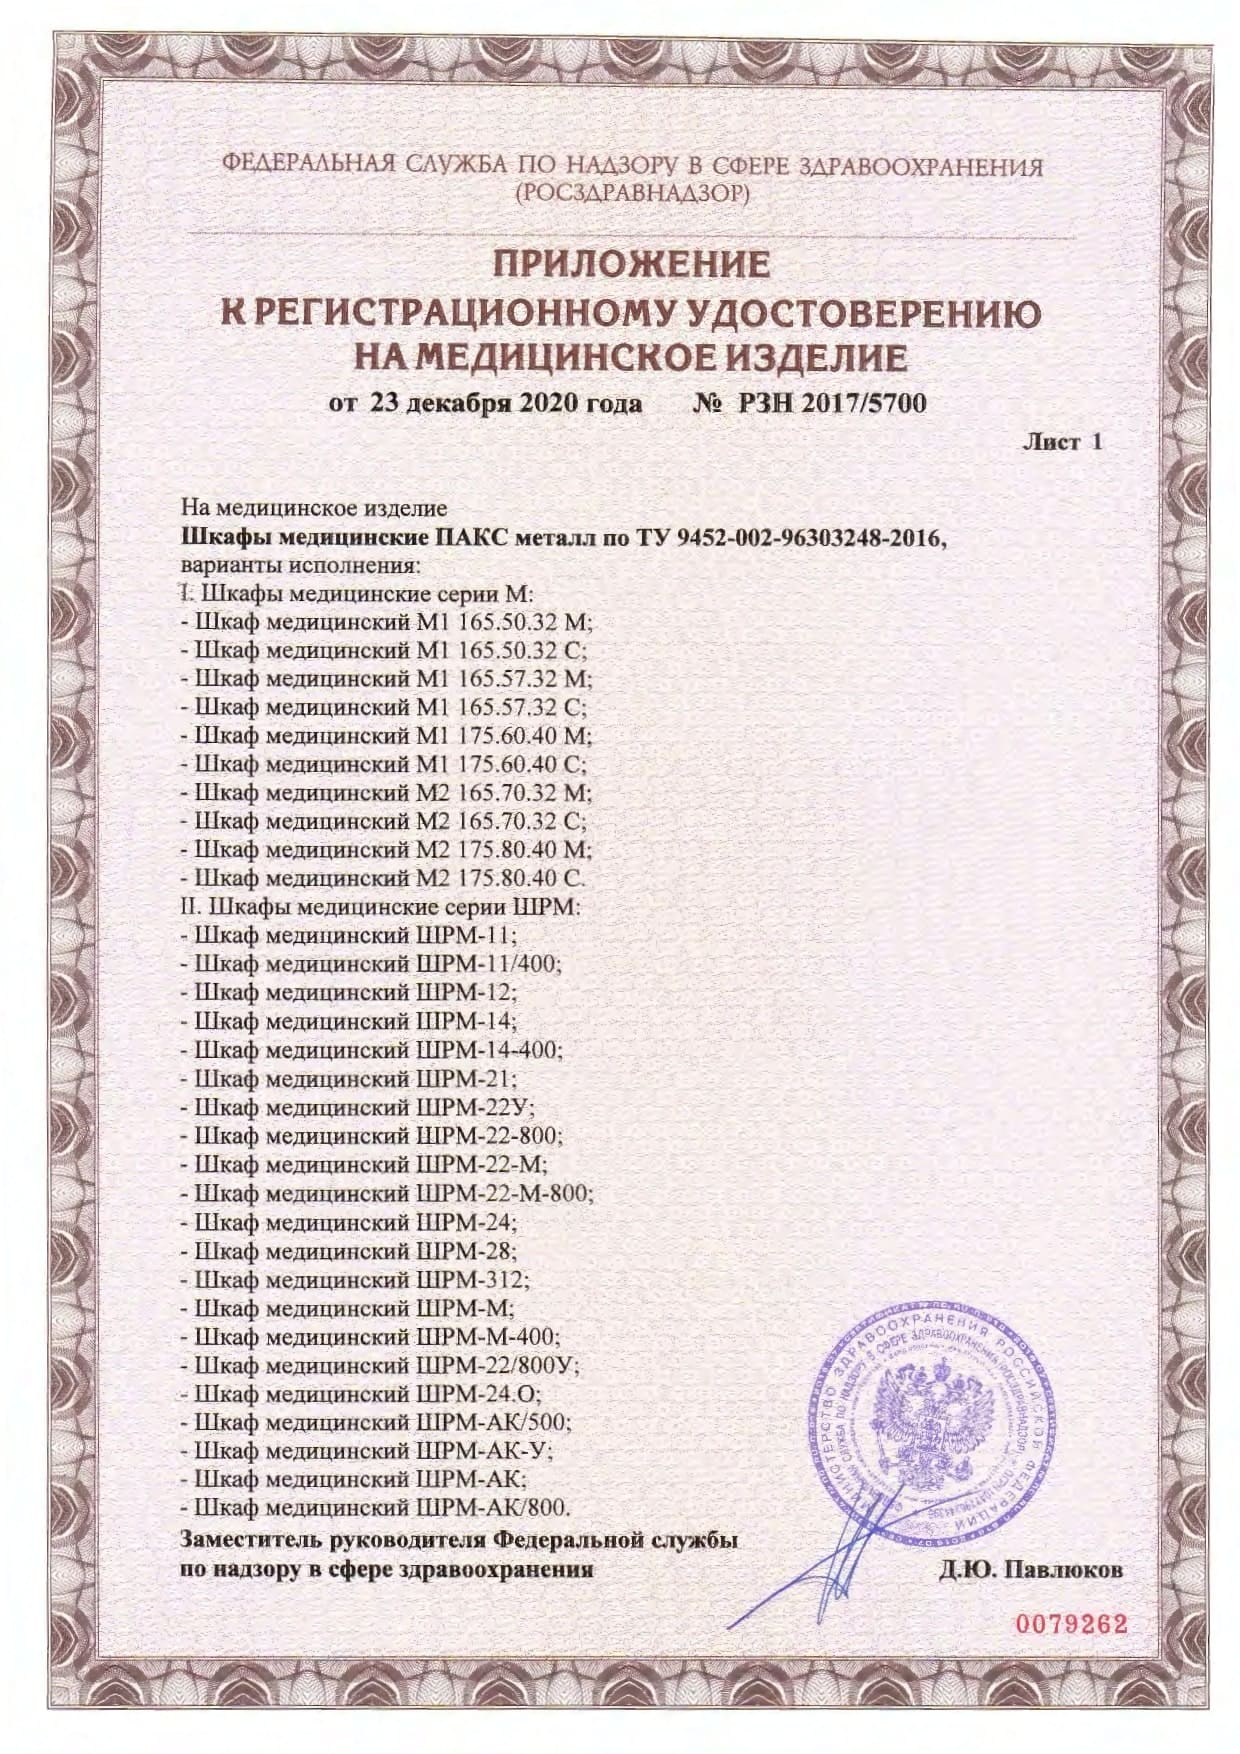 ШРМ-22у/800 регистрационное удостоверение